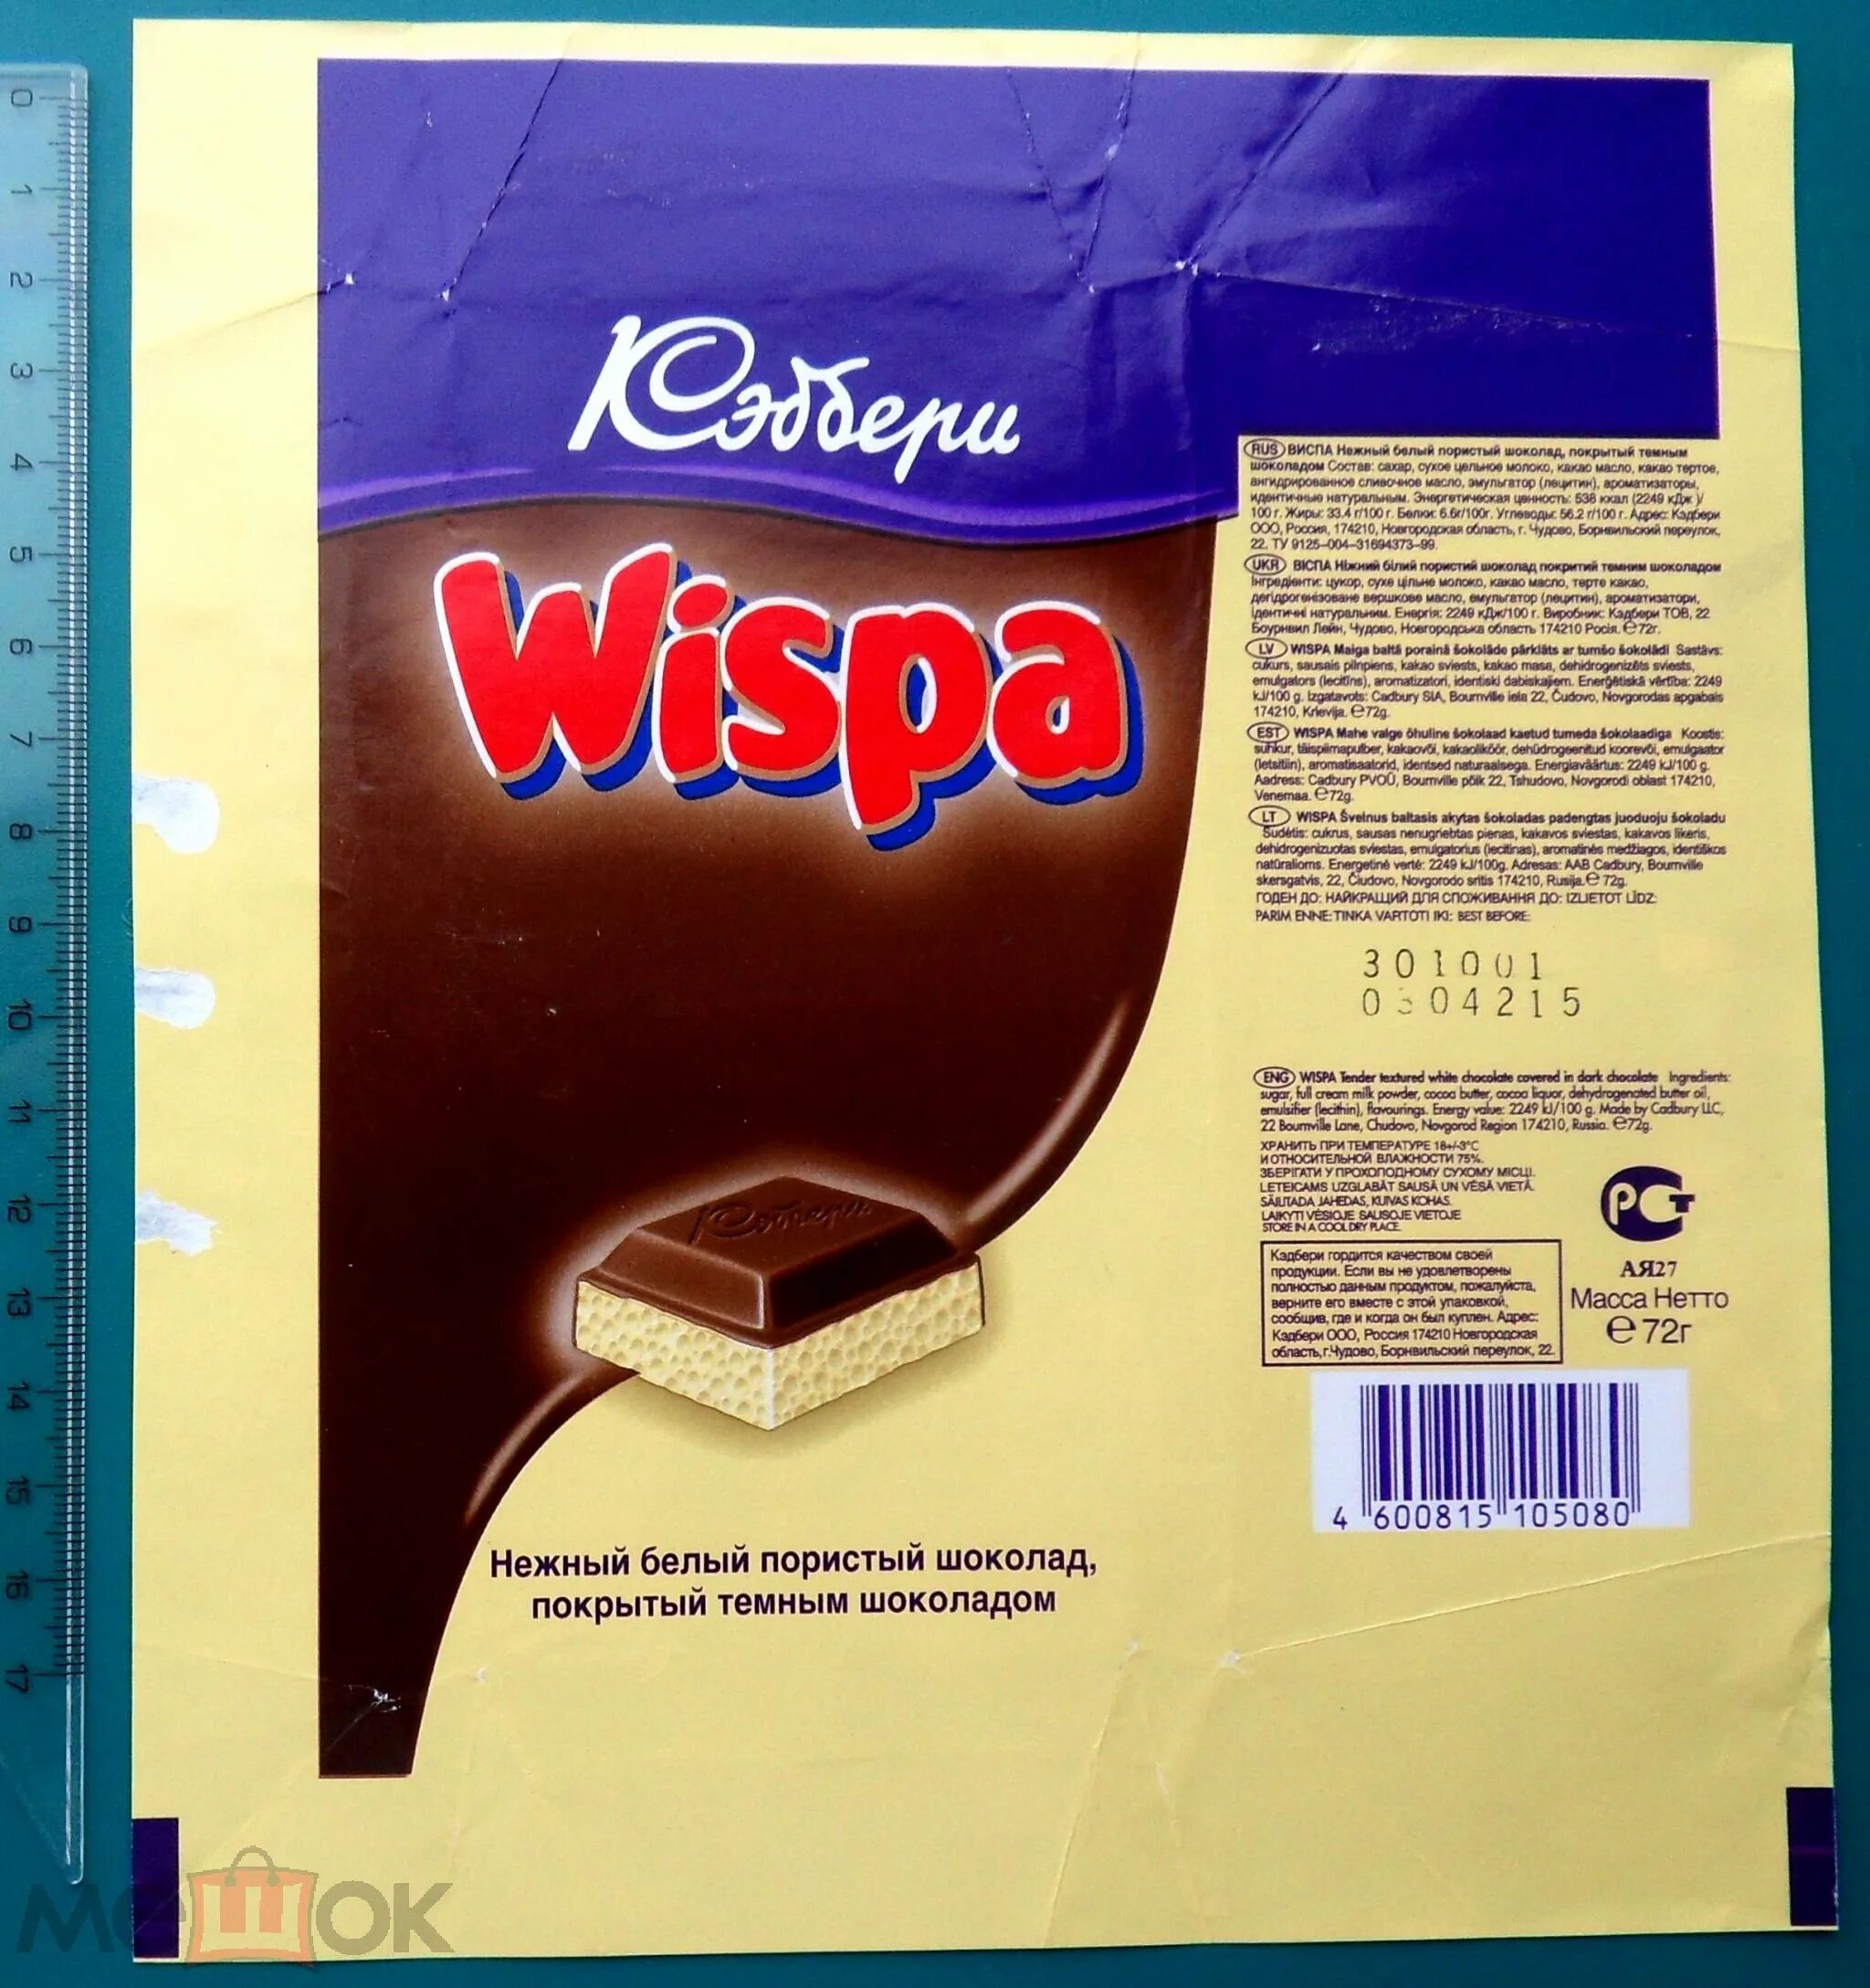 Шоколад на вайлдберриз. Шоколад Кэдбери Виспа. Пористый шоколад Wispa. Виспа шоколад белый пористый. Виспа шоколад 90-х пористый.